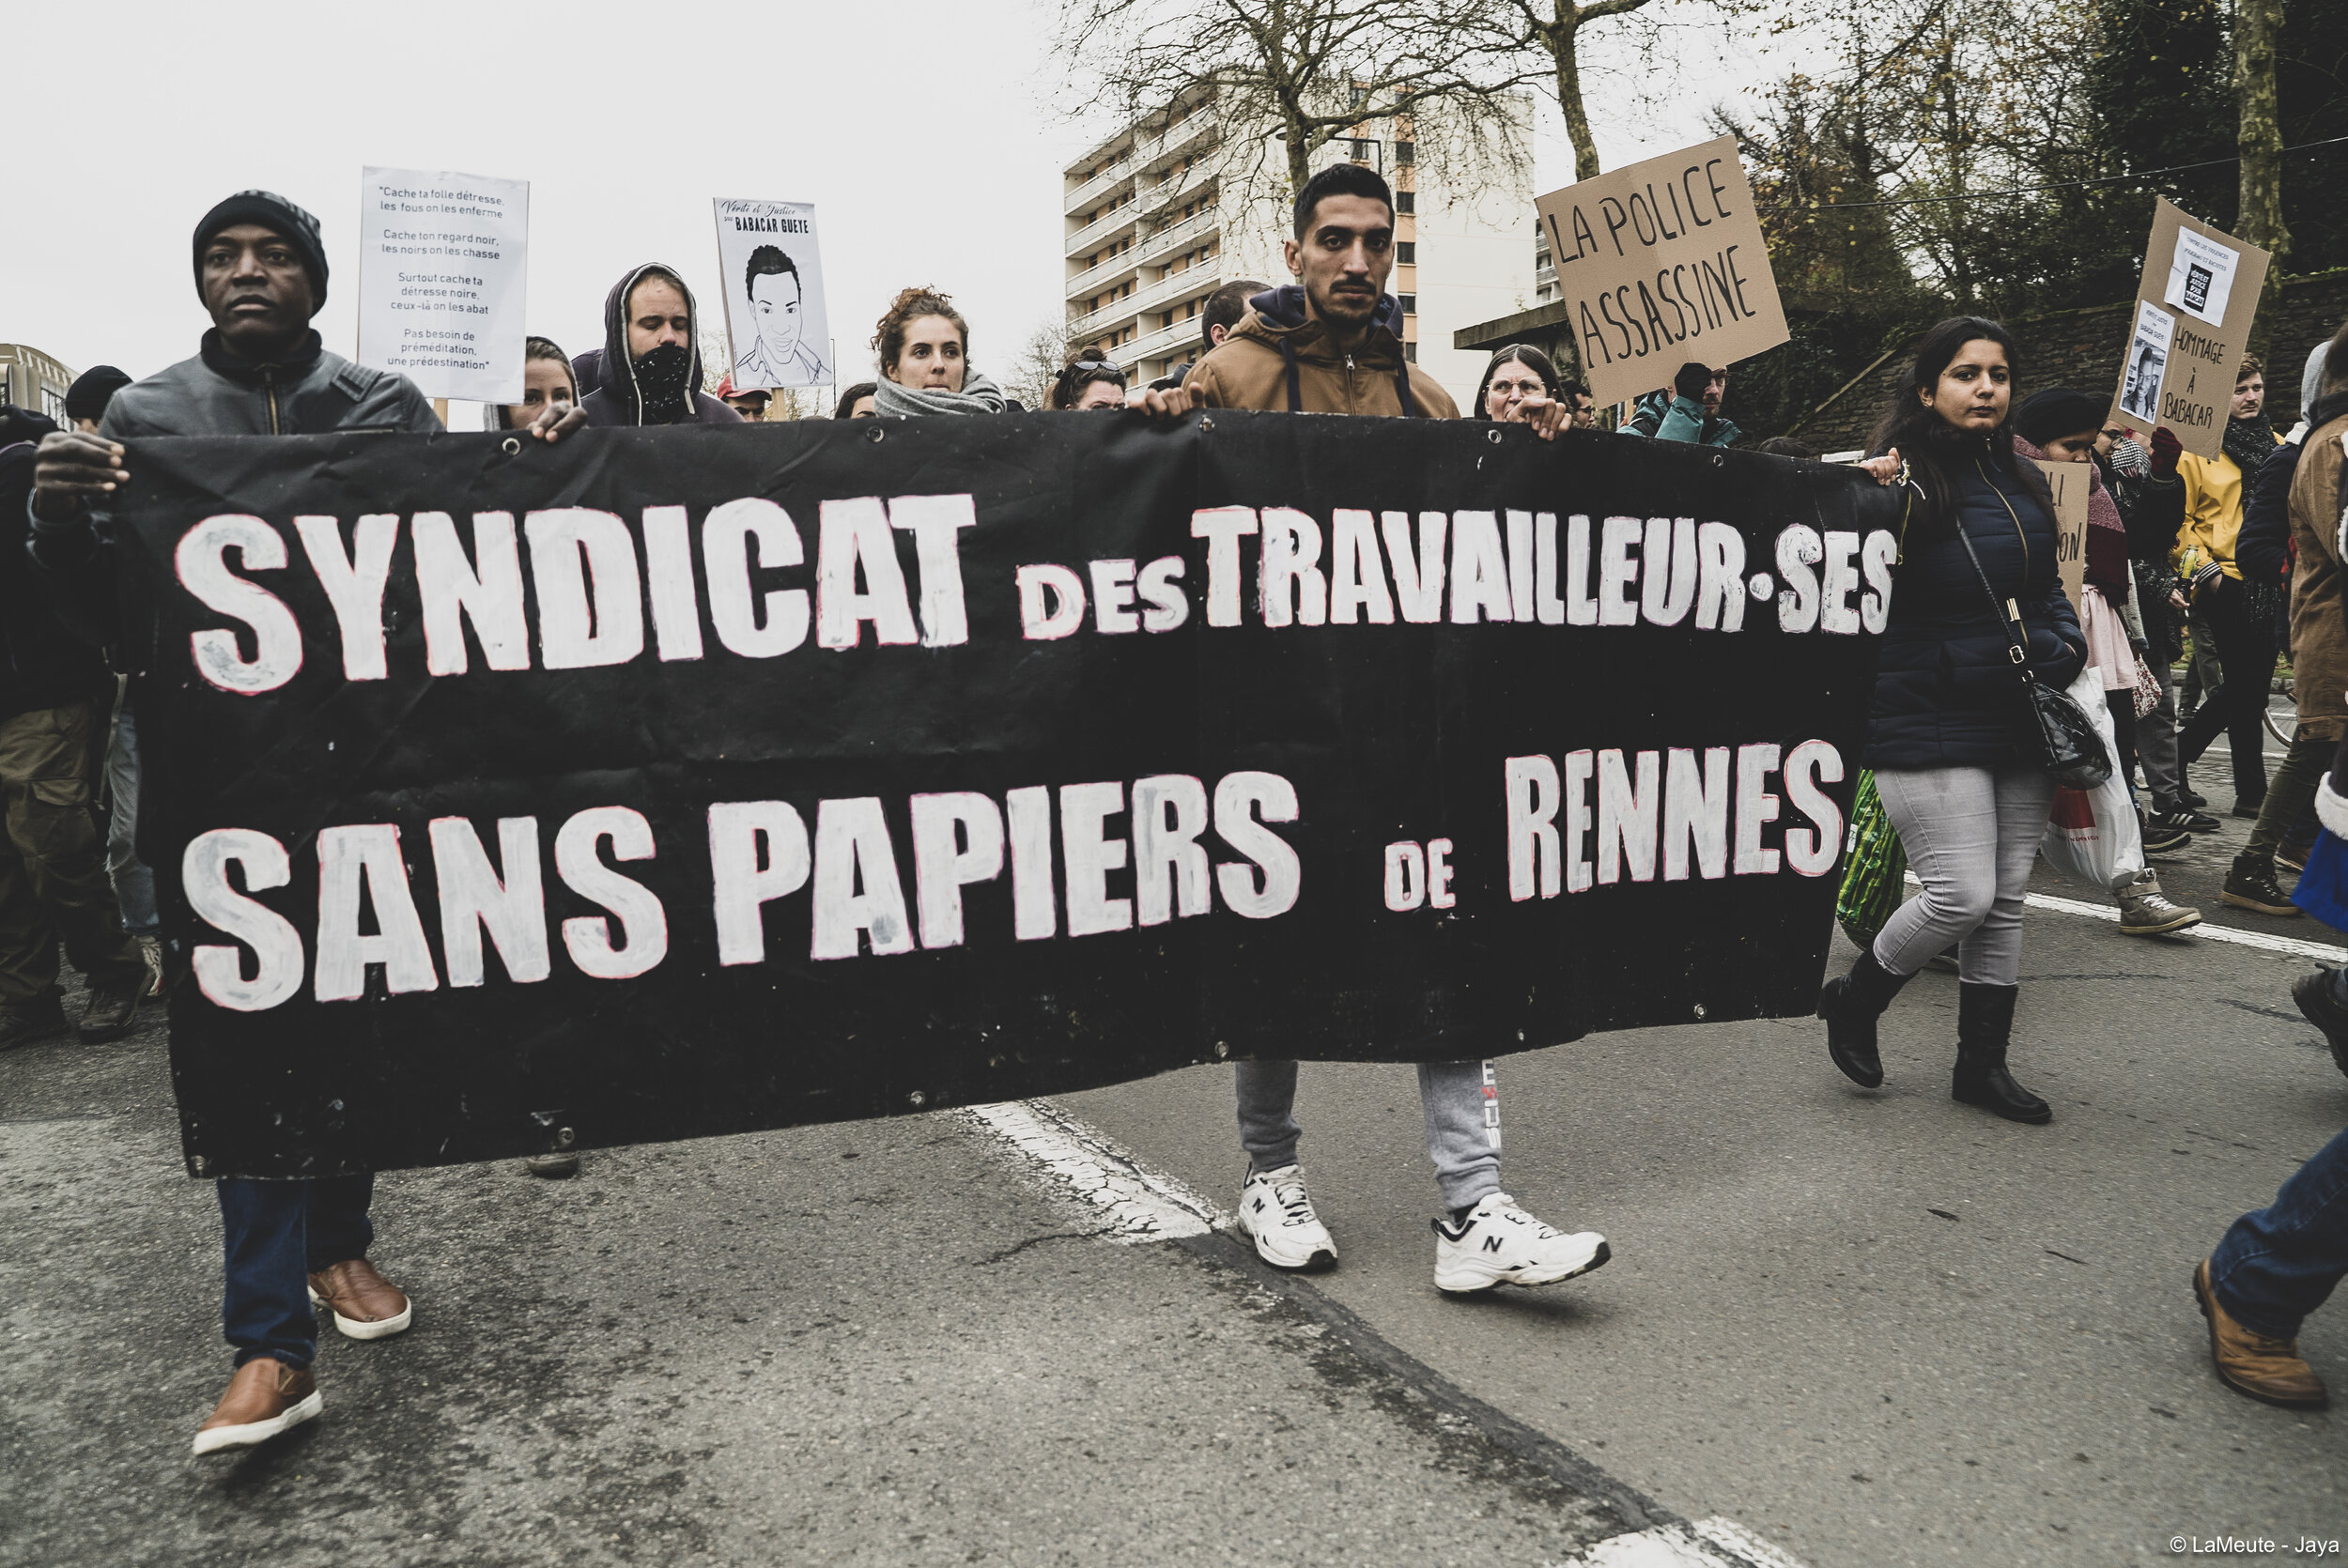   Des collectifs sont venus apporter leur soutien. Comme NousToutes35 ou encore le collectif des travailleurs sans papiers de Rennes ainsi que celui de Paris.  ©LaMeute - Jaya 